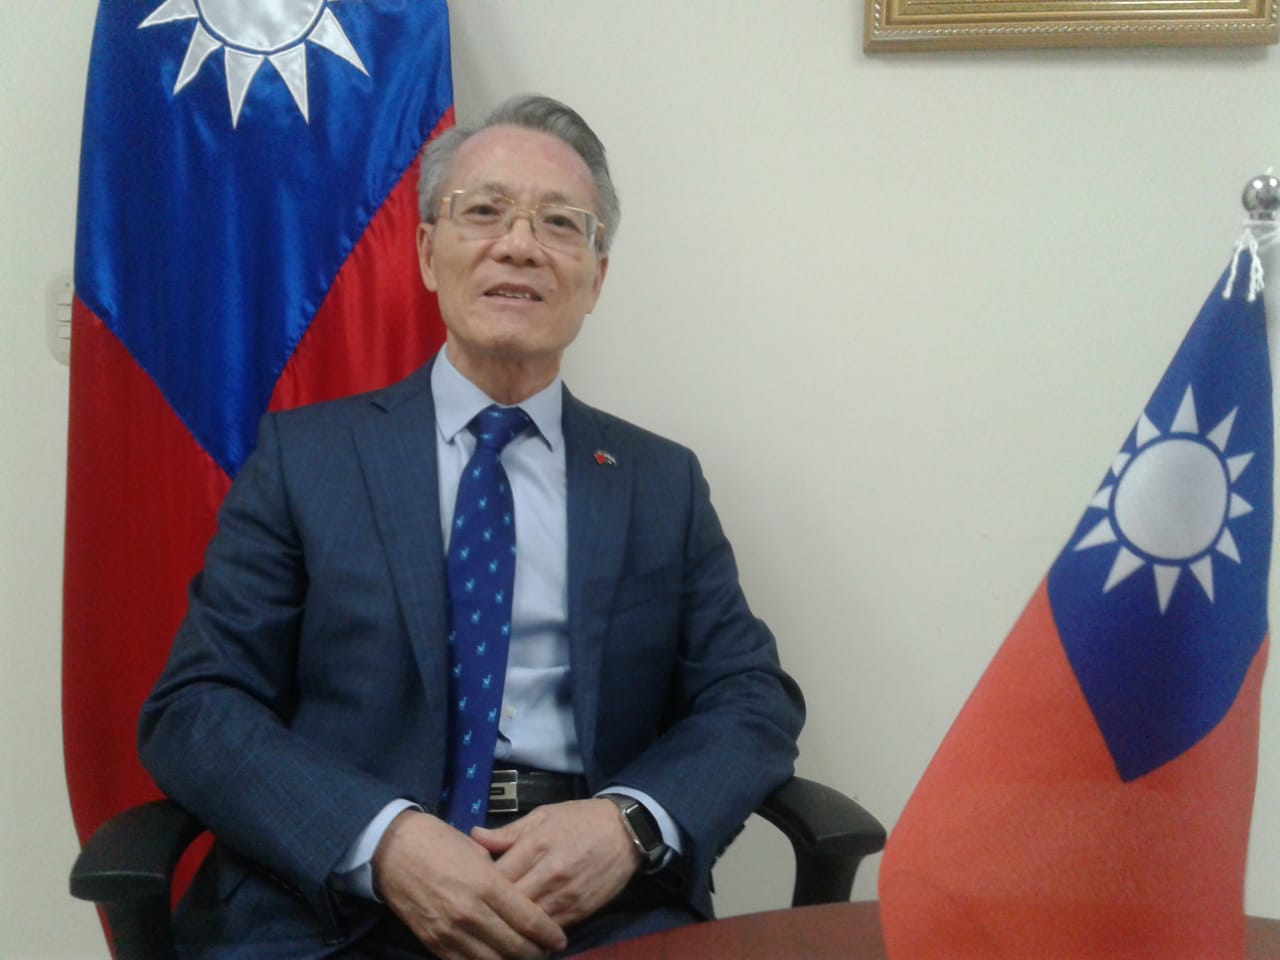 Taiwán amplía respaldo para viviendas de interés social Managua. Radio La Primerísima